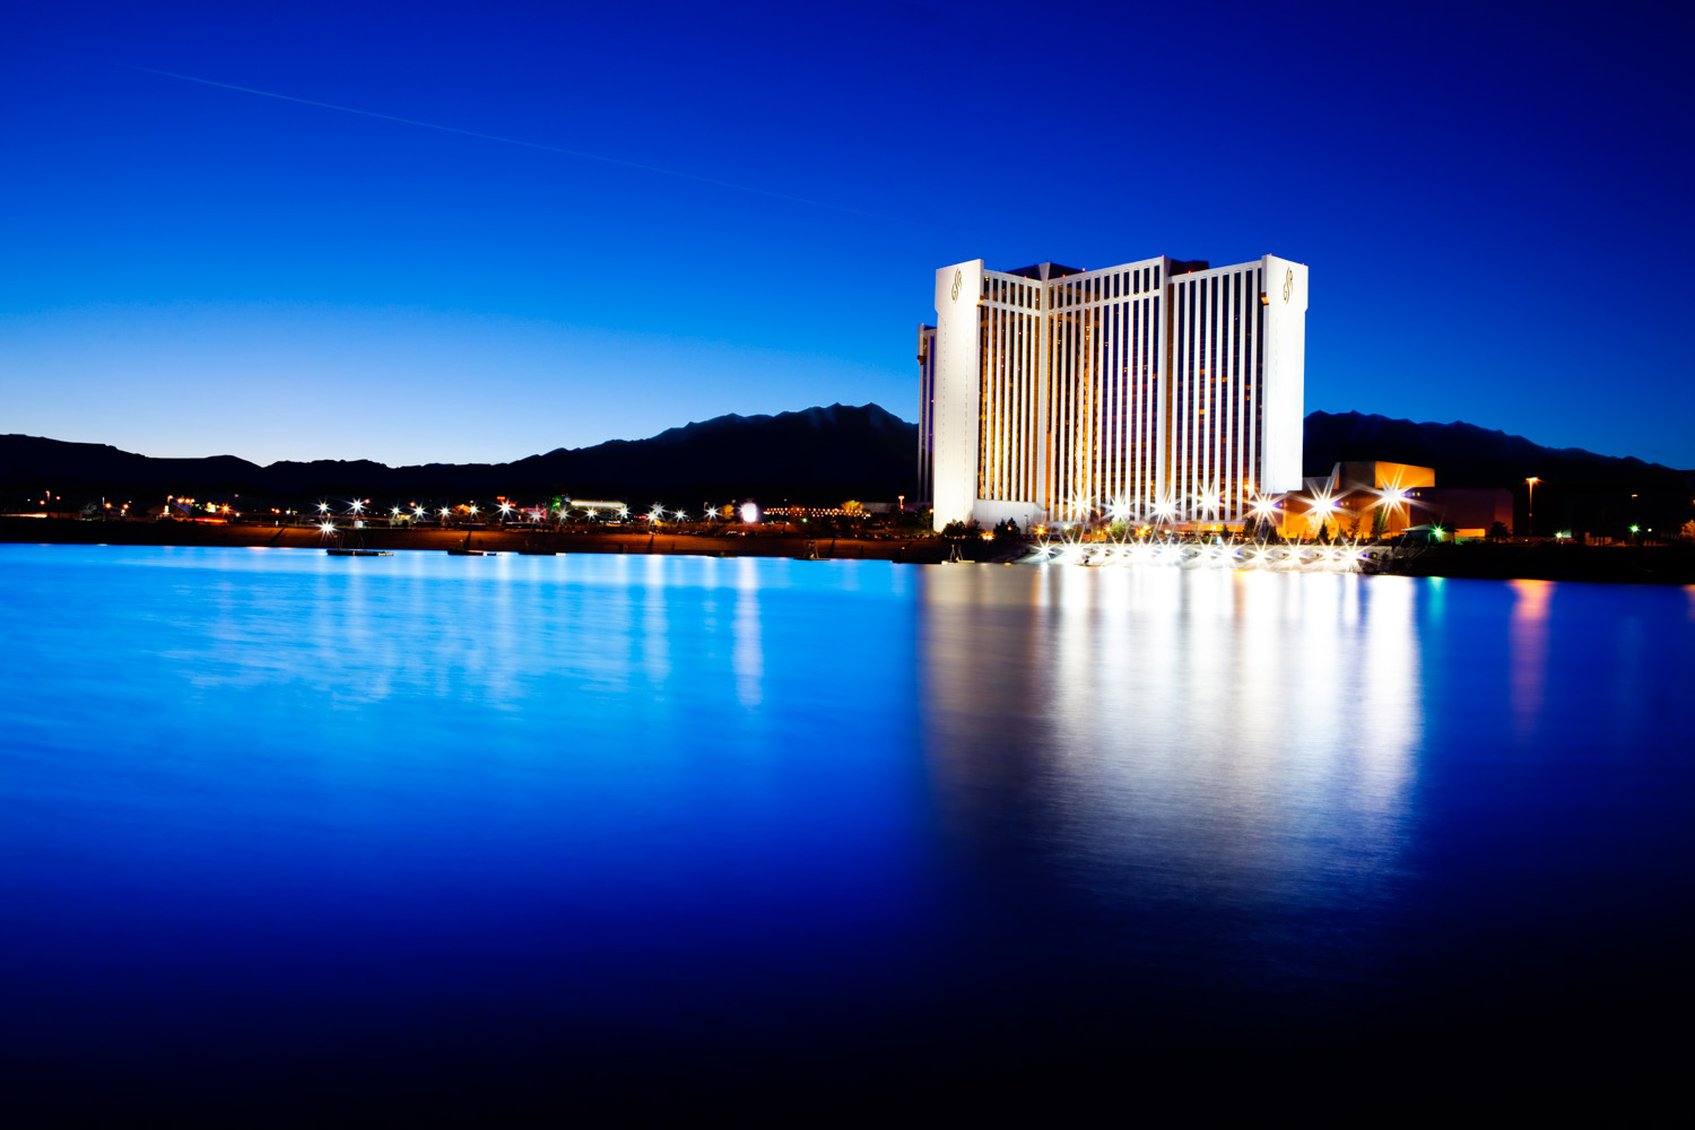 grand sierra resort and casino